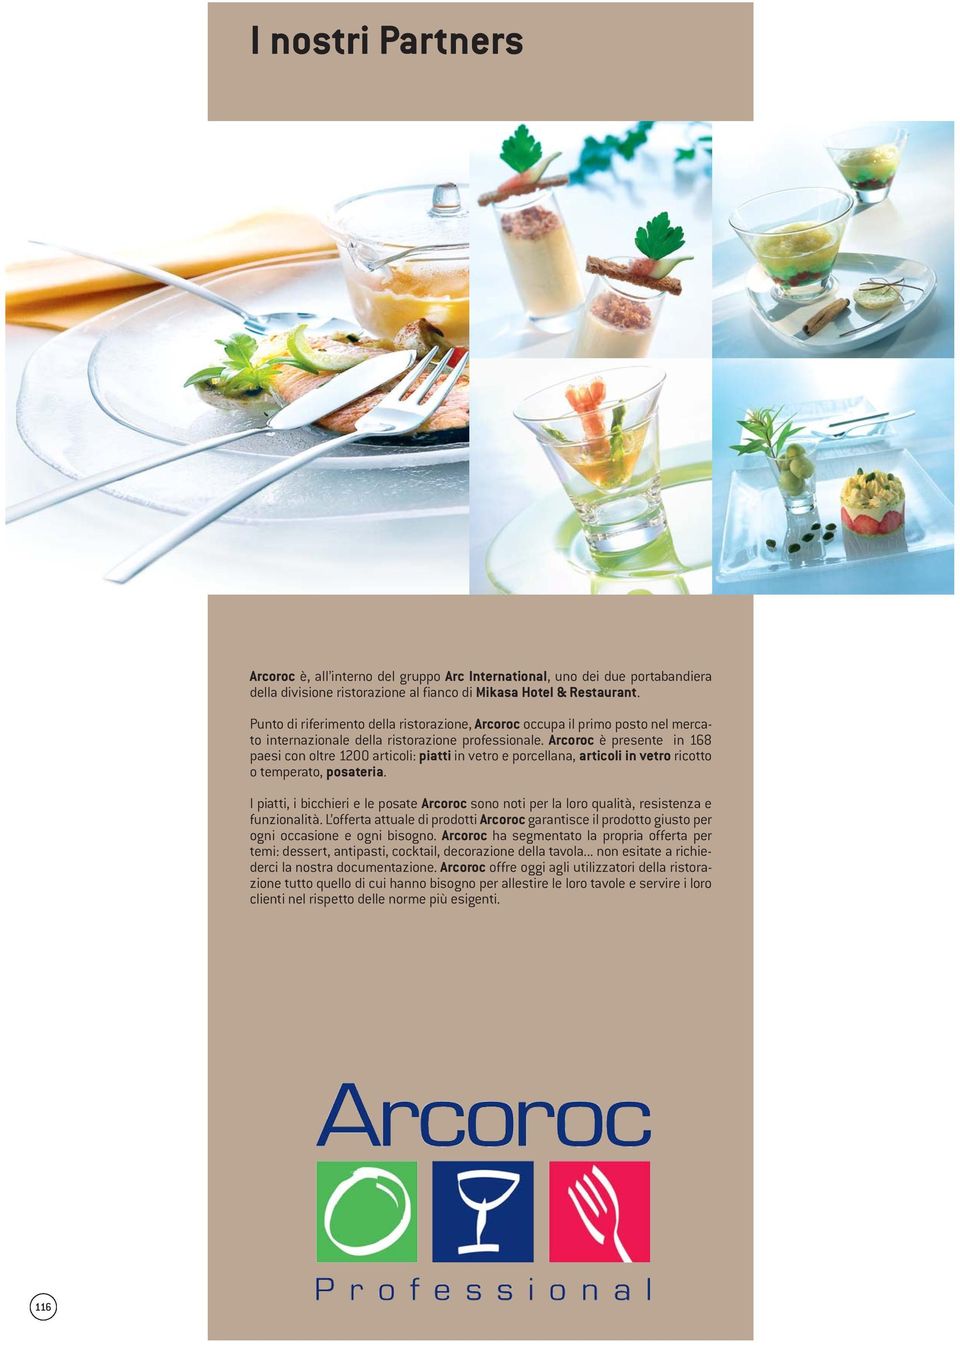 Arcoroc è presente in 168 paesi con oltre 1200 articoli: piatti in vetro e porcellana, articoli in vetro ricotto o temperato, posateria.